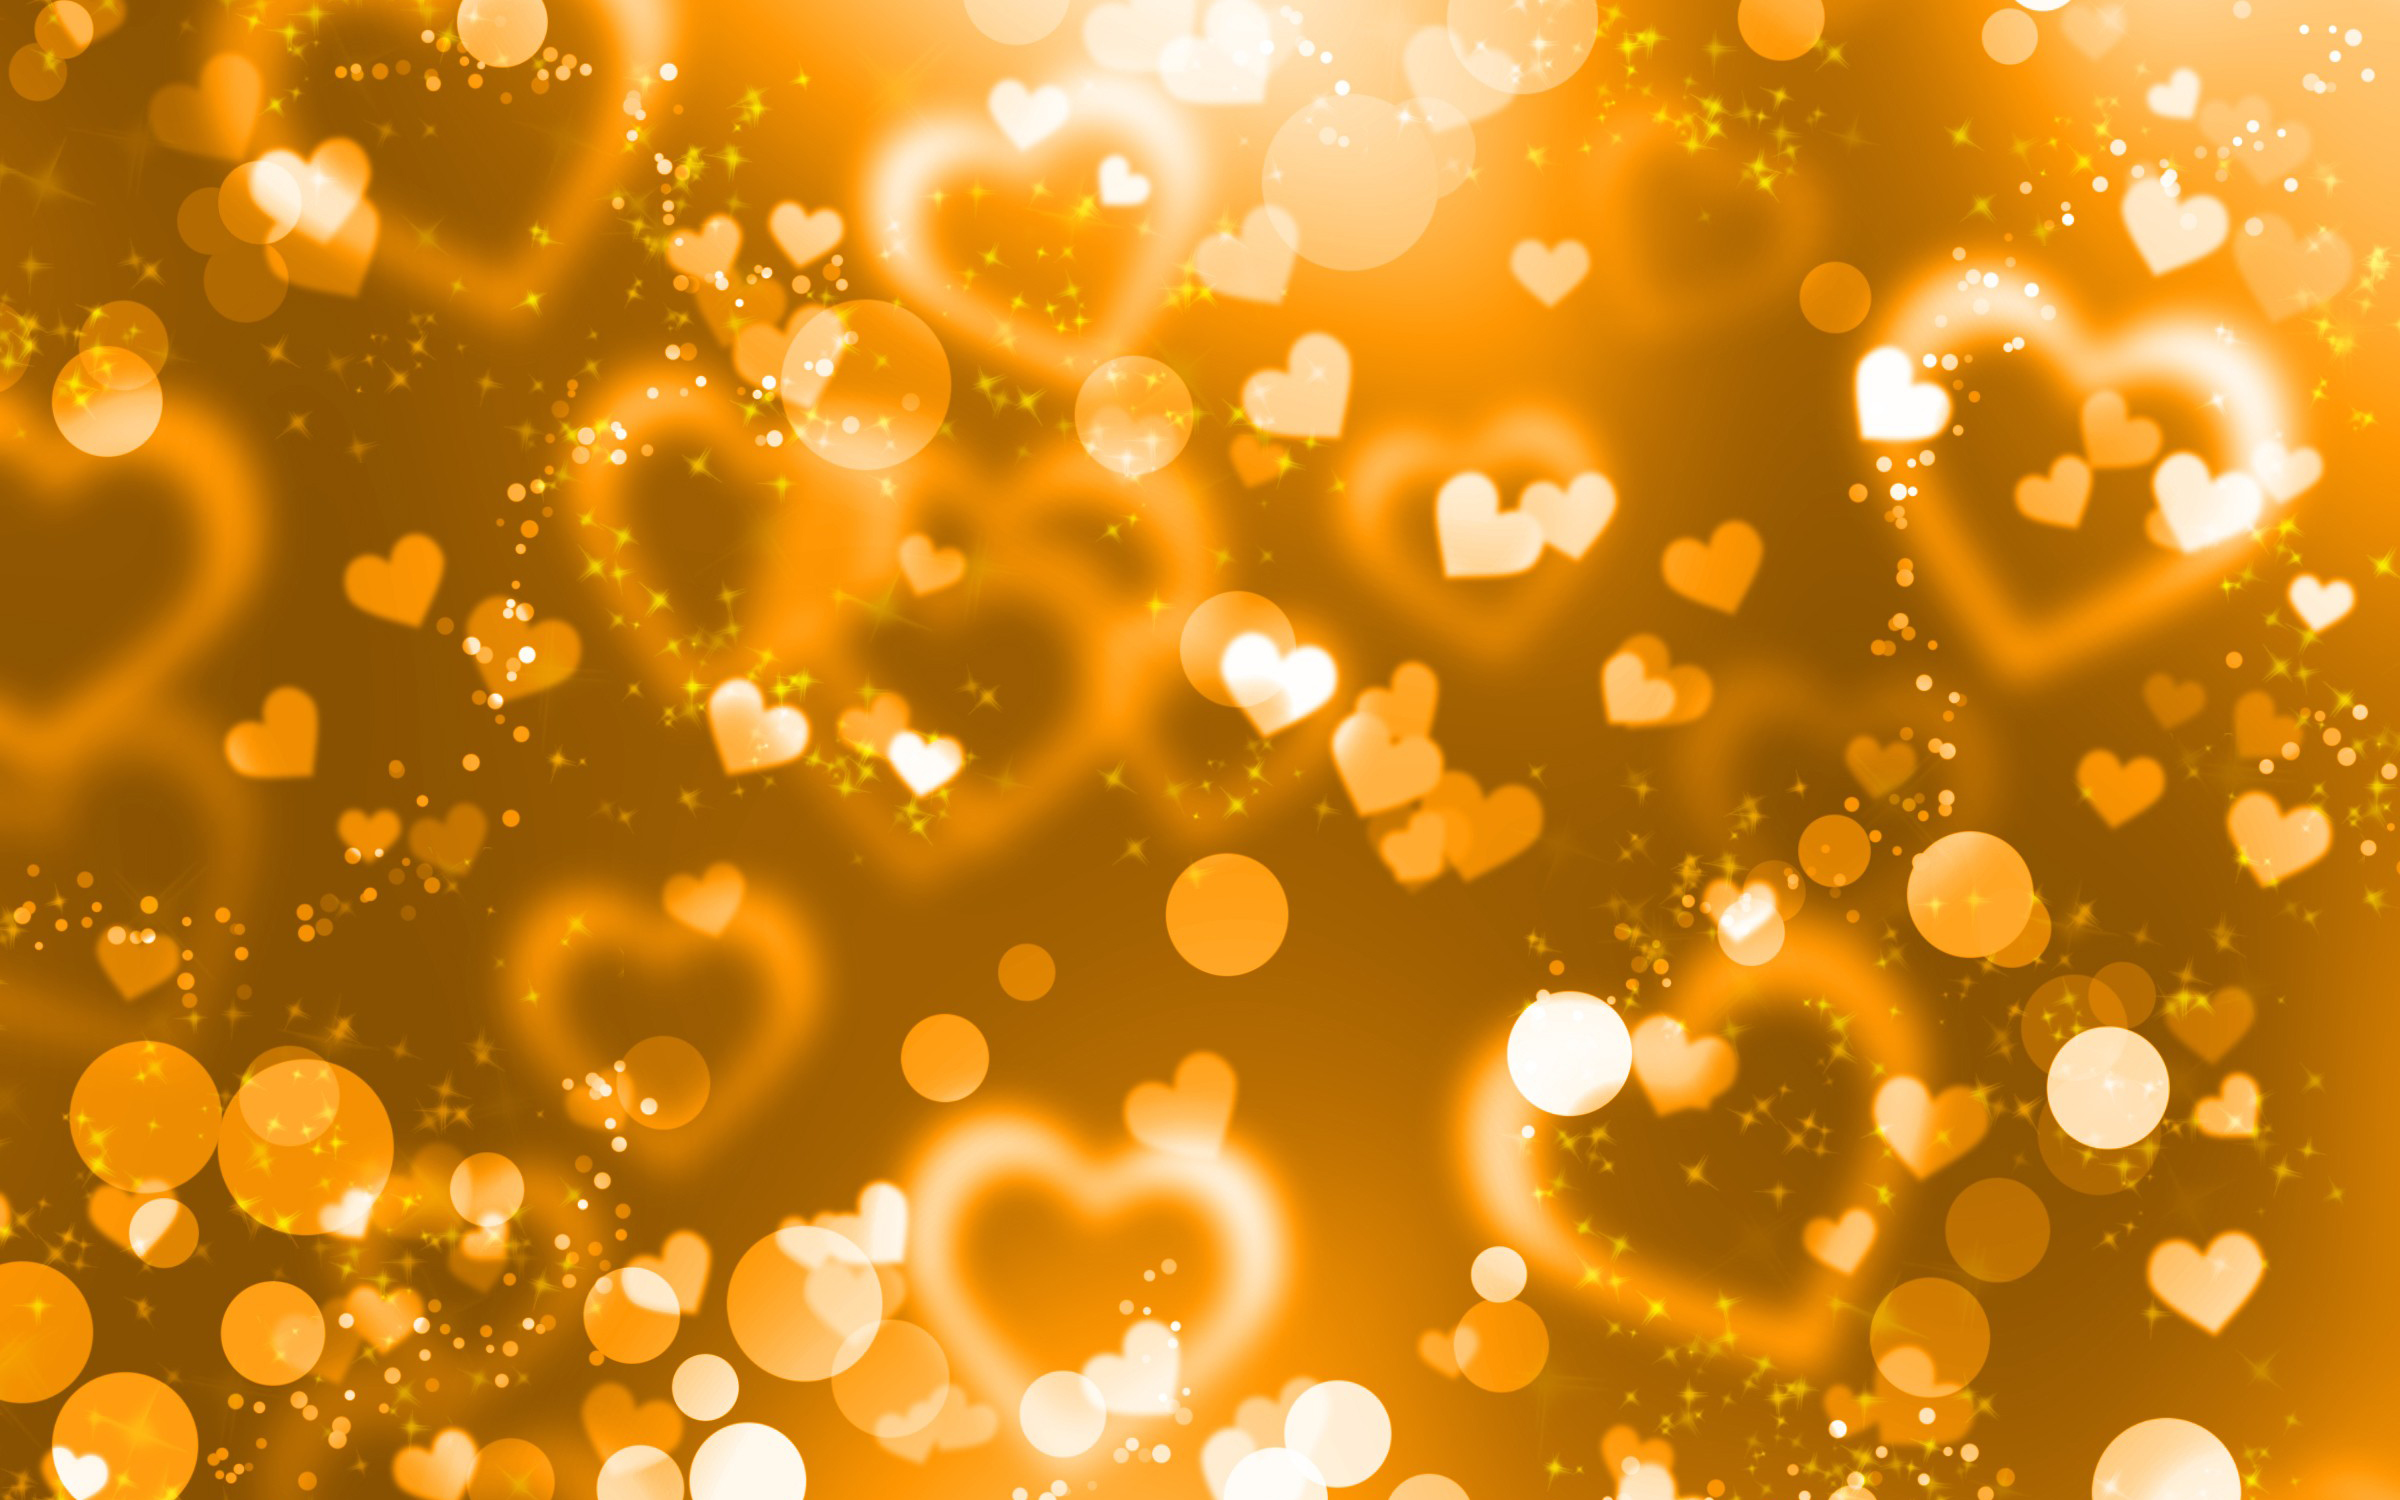 Gold Heart Background Hd - 2400x1500 Wallpaper 